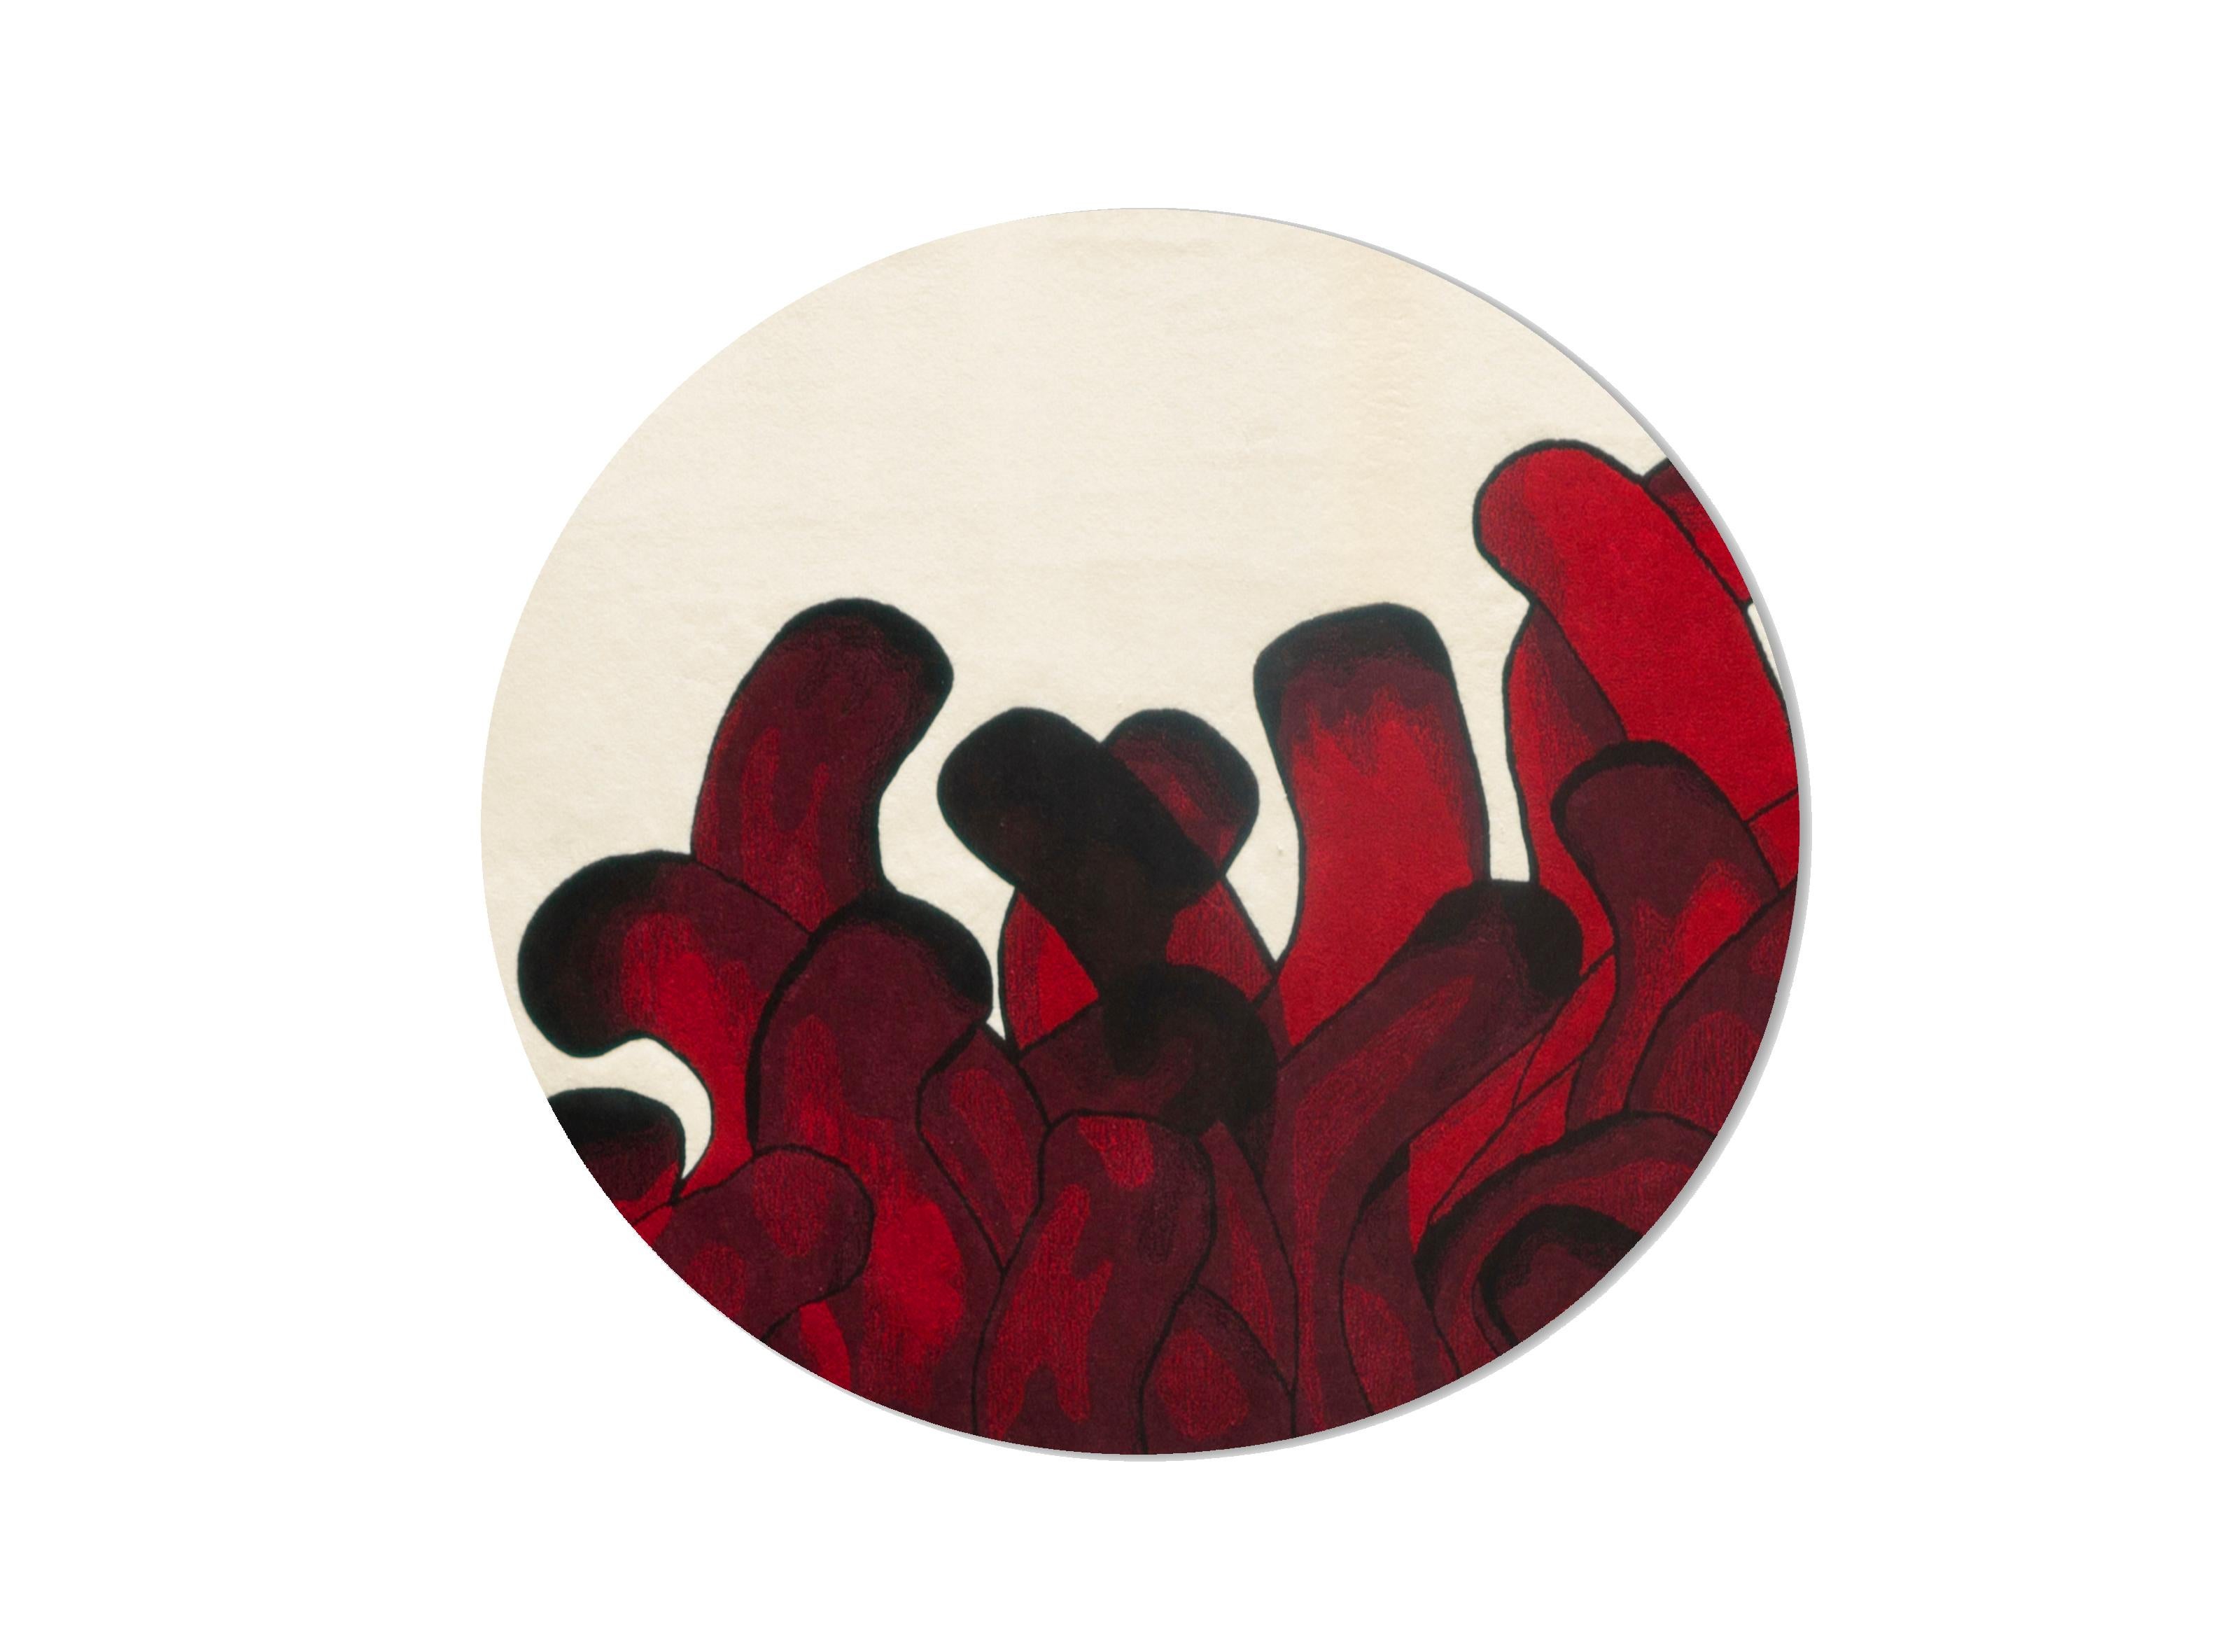 Tapis Anémone rouge François Dumas
Anemone est un tapis inspiré d'une peinture dans laquelle les coups de pinceau imitent les mouvements des anémones de mer. Le tapis est fabriqué à la main par des artisans au Portugal qui tuftent et coupent la